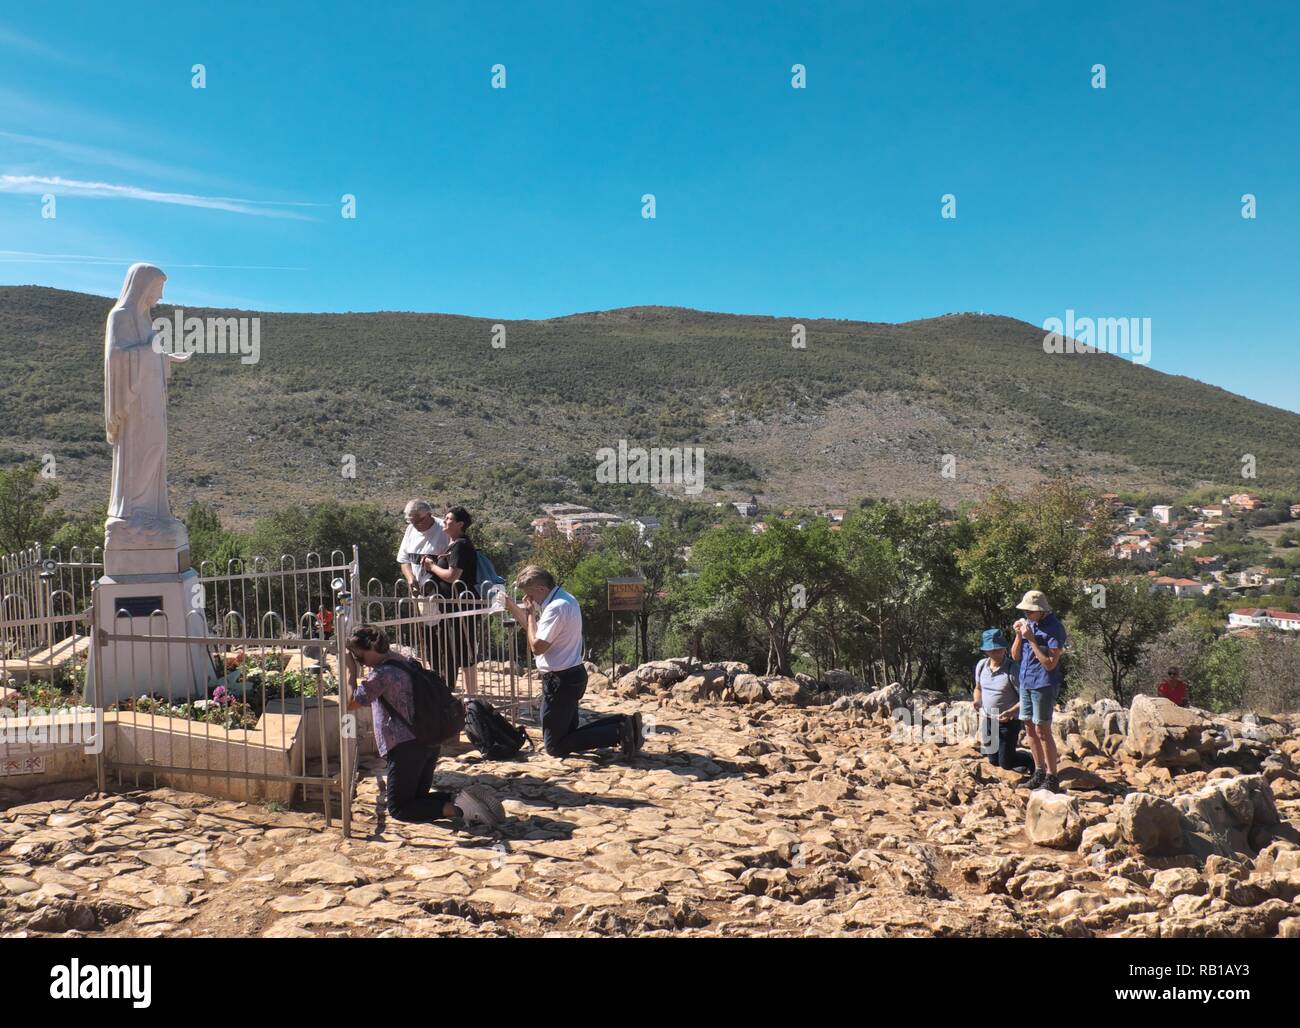 Vista de la aparición de la Virgen María en la colina en Bosnia y Herzegovina durante un brillante día de verano mostrando mucha gente orando Foto de stock